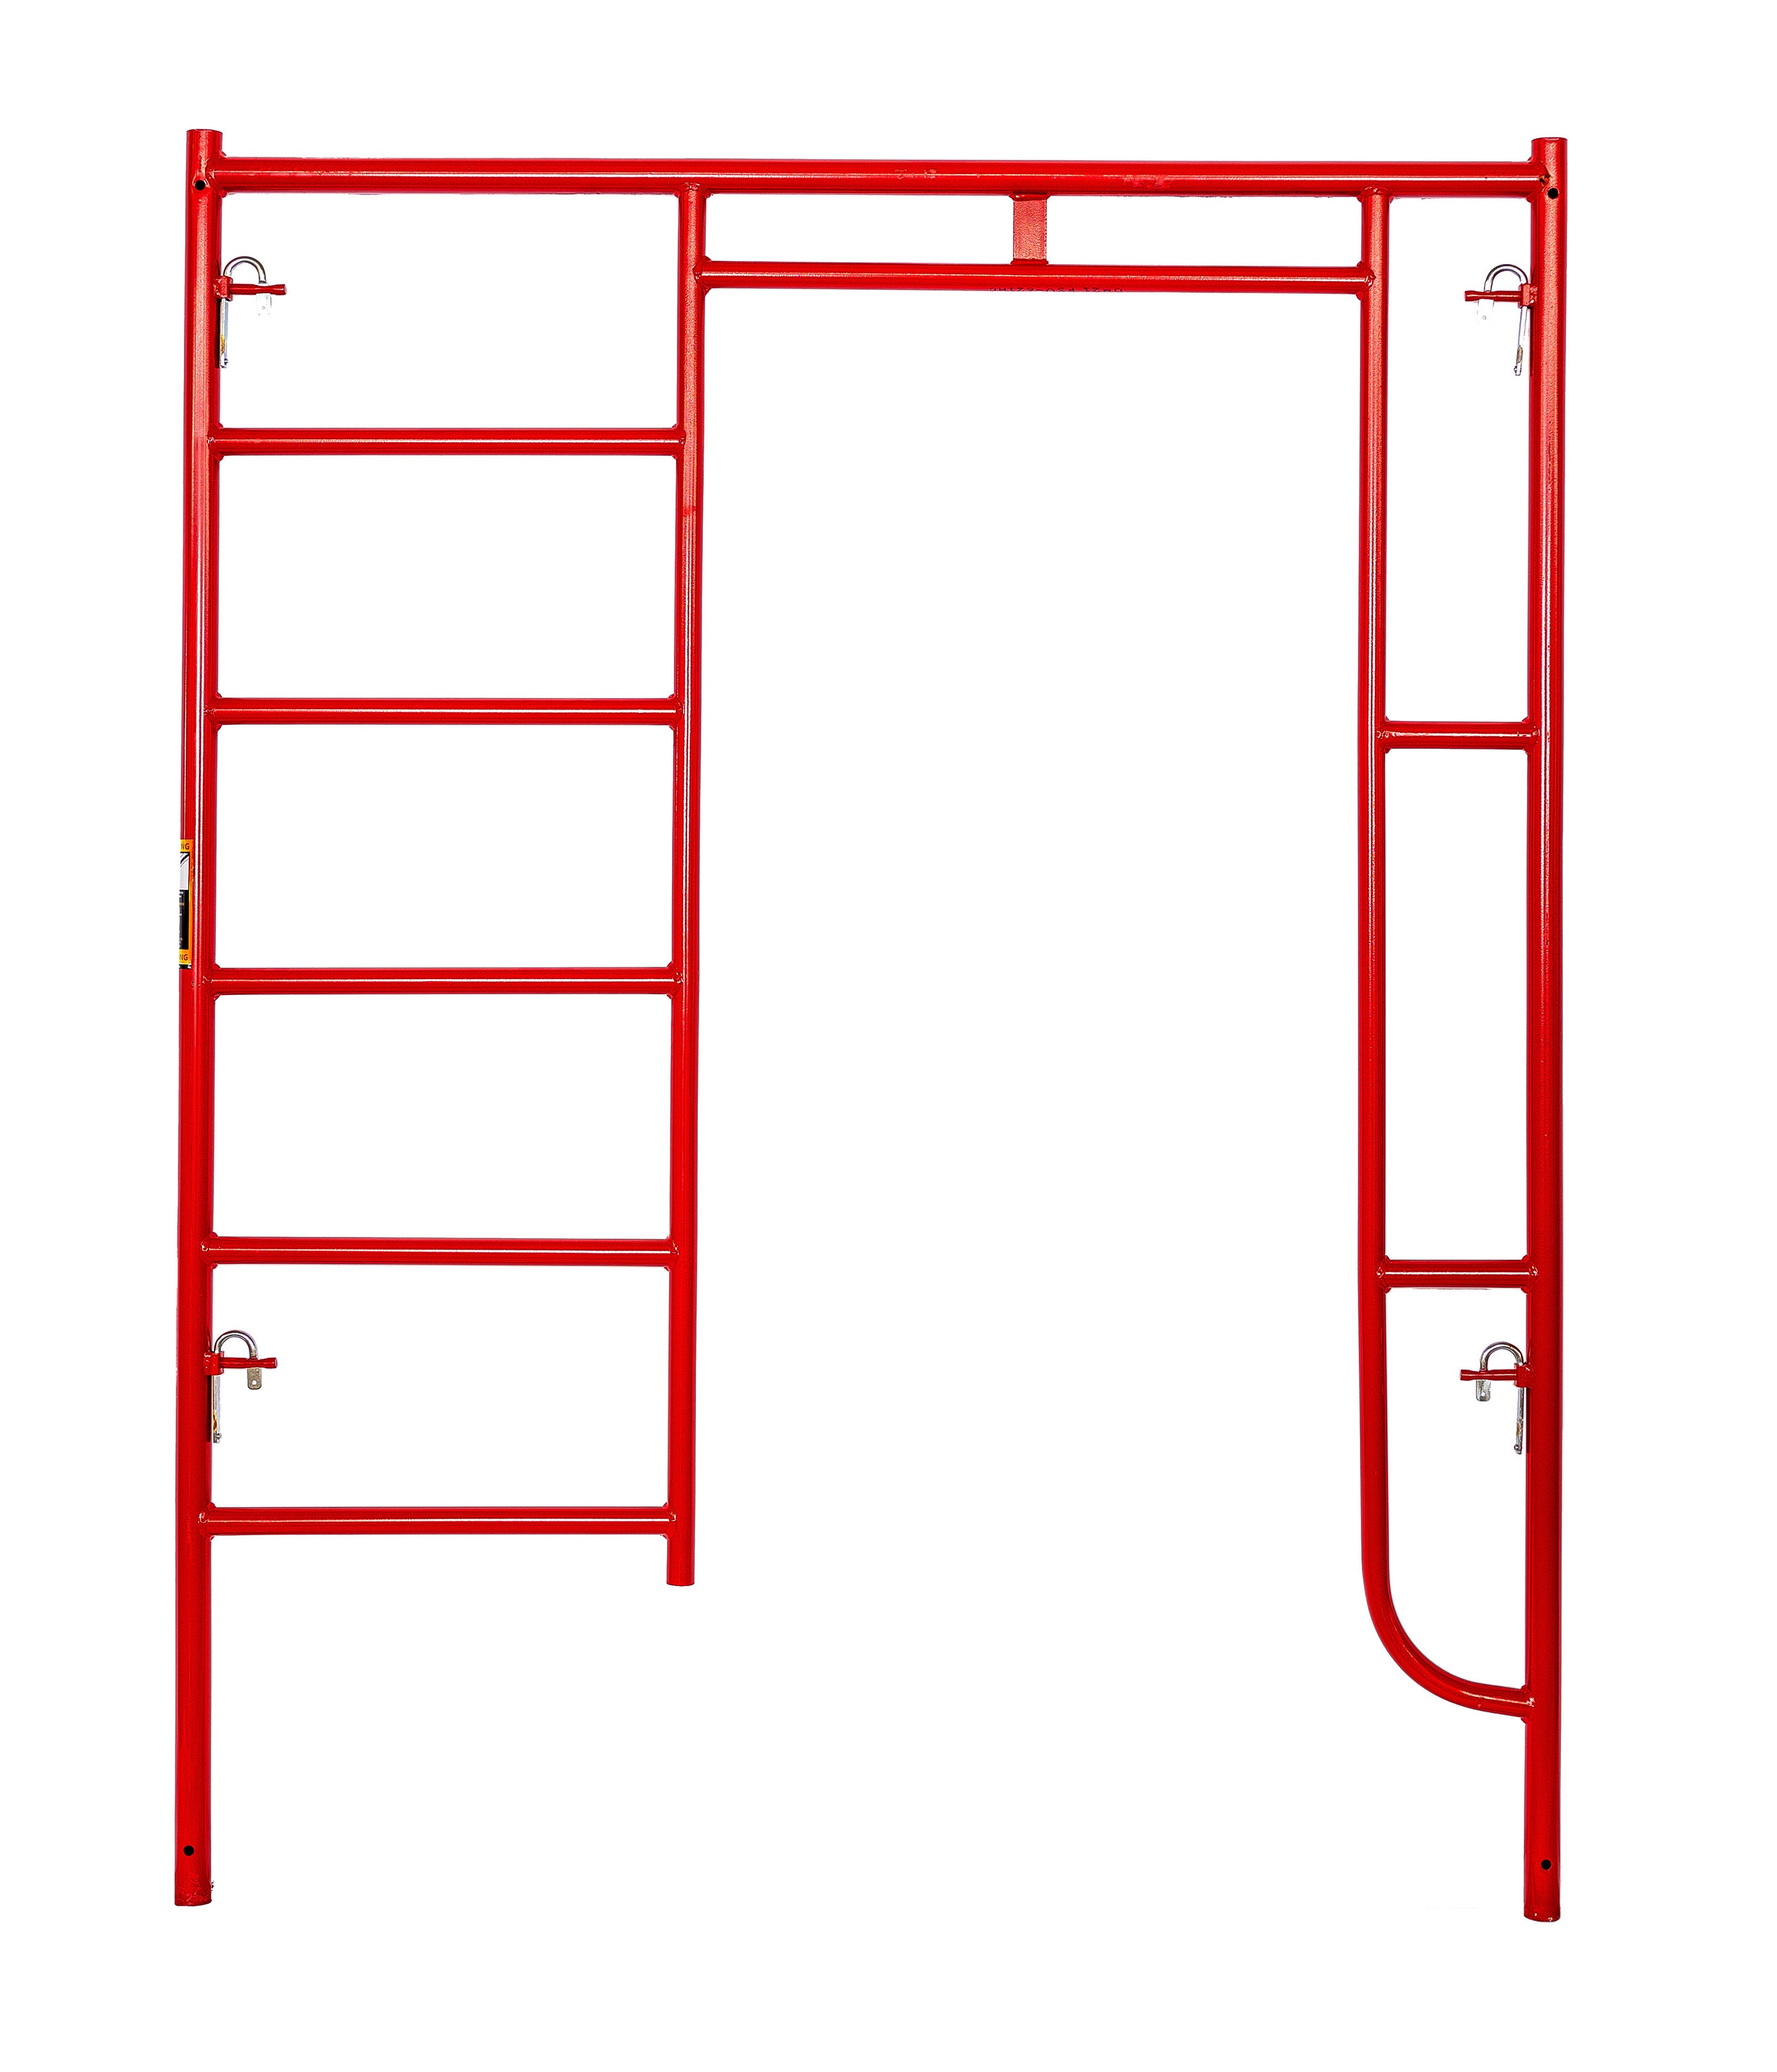 Compre ahora el marco de andamio de escalera simple estilo S de 5' X 2' –